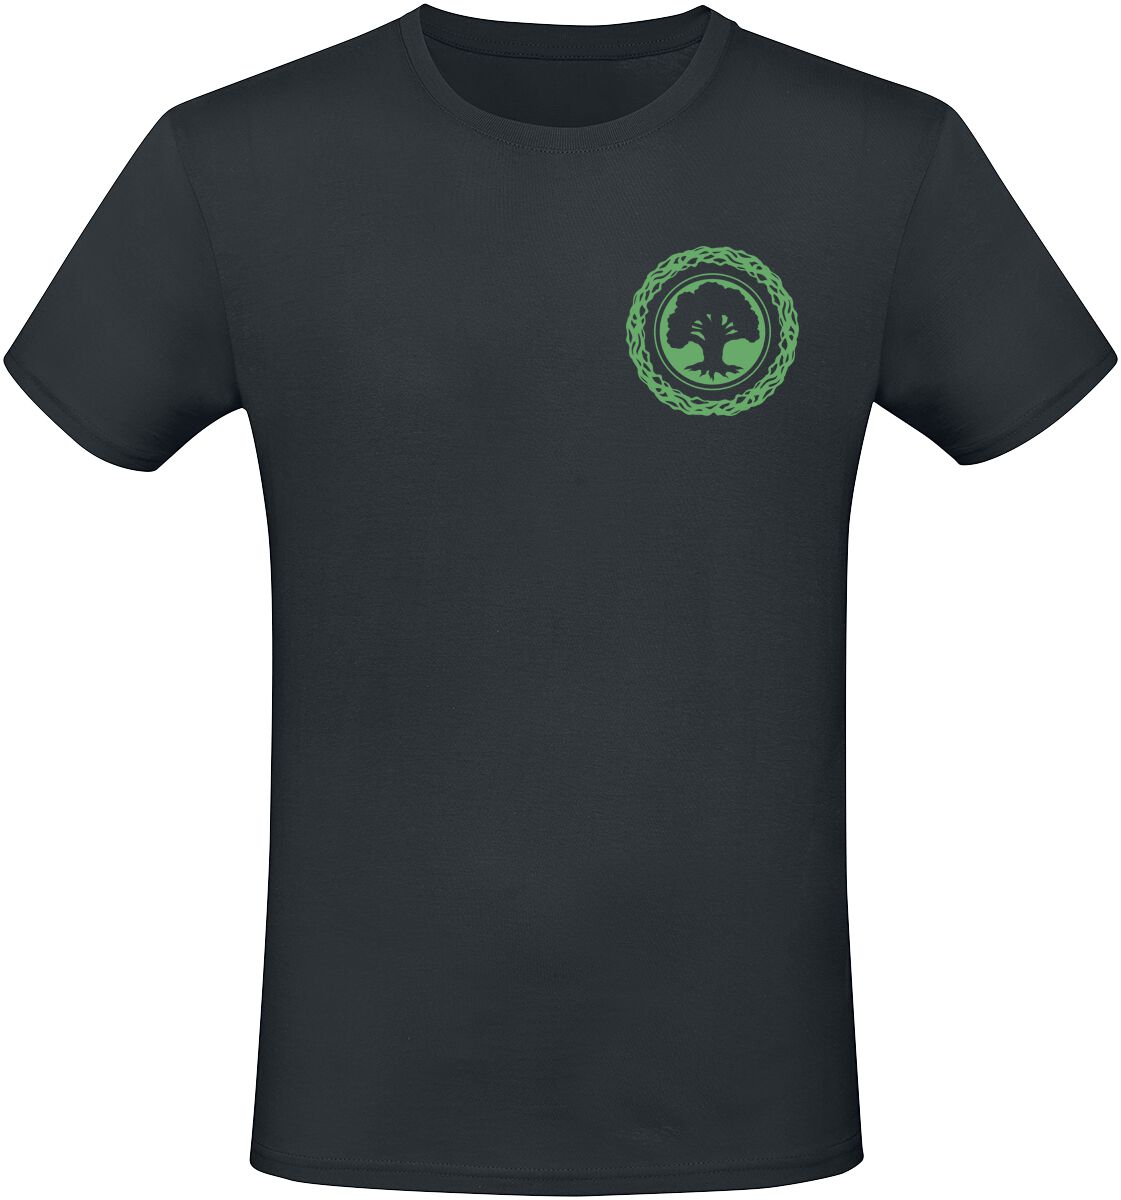 Magic: The Gathering - Gaming T-Shirt - Green Mana - S bis XXL - für Männer - Größe XXL - schwarz  - EMP exklusives Merchandise!